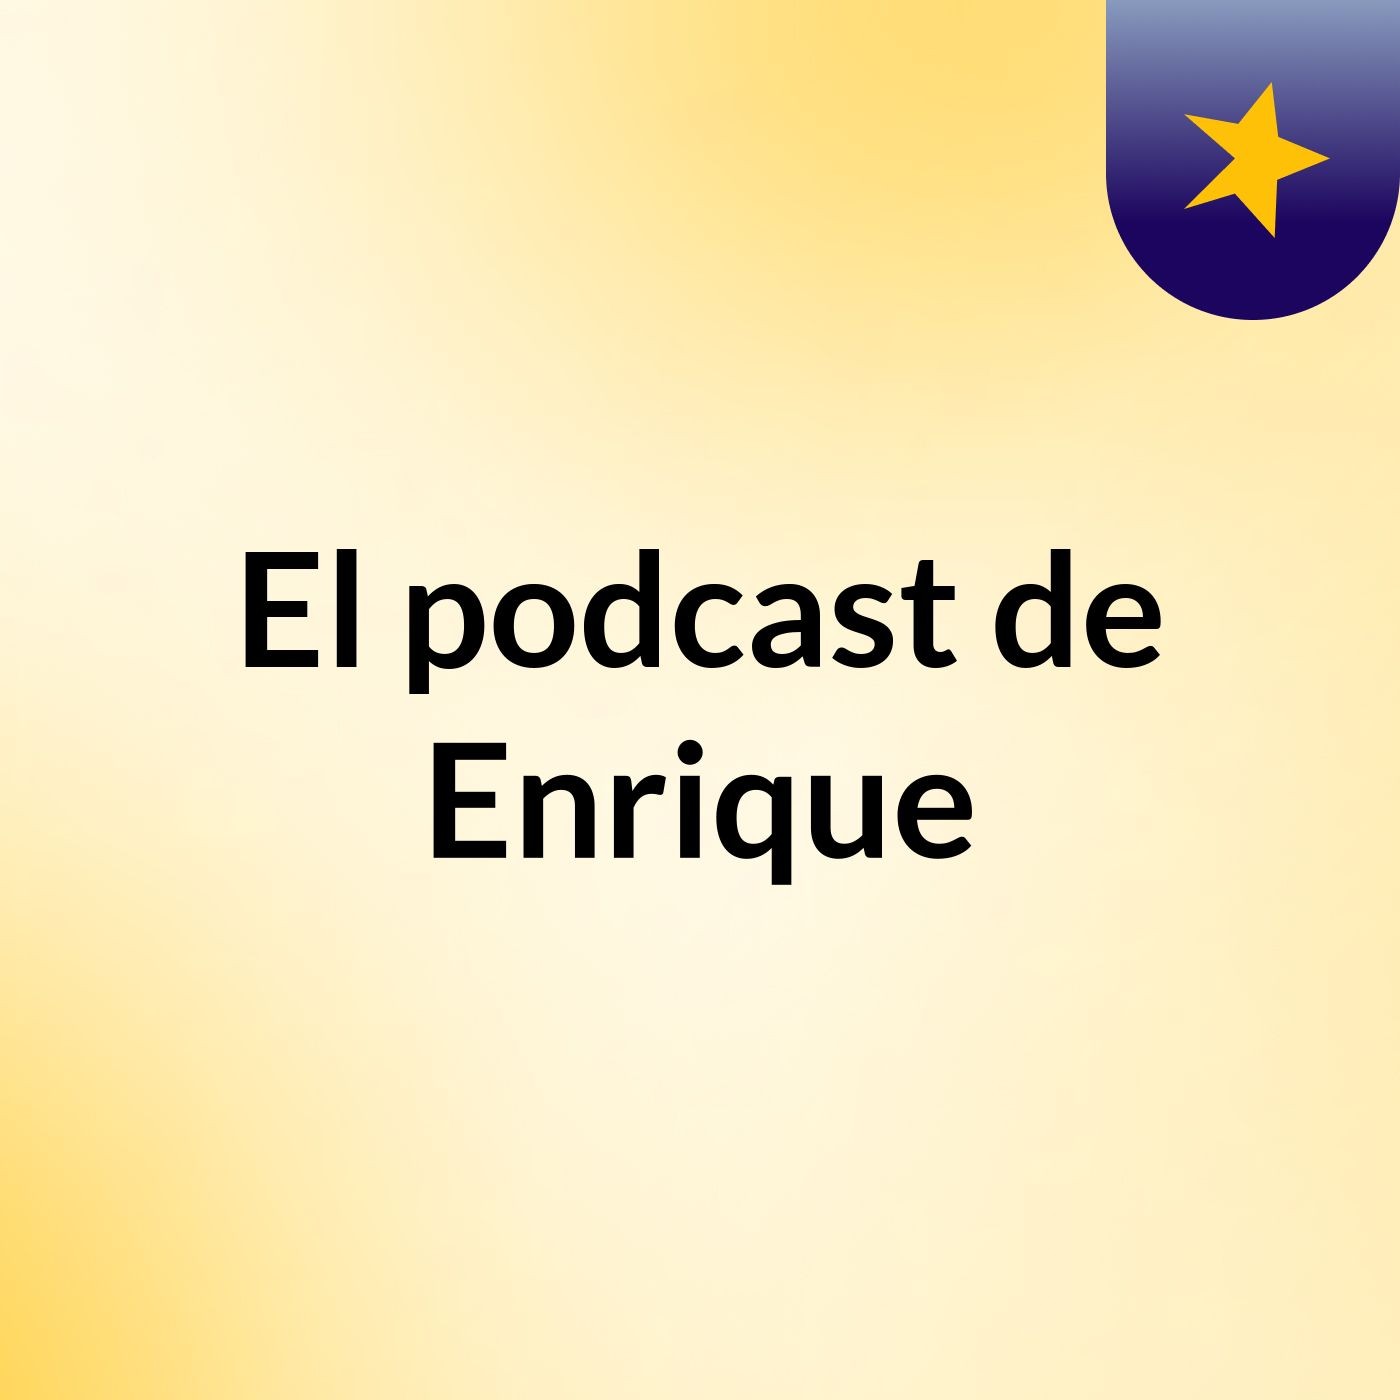 El podcast de Enrique